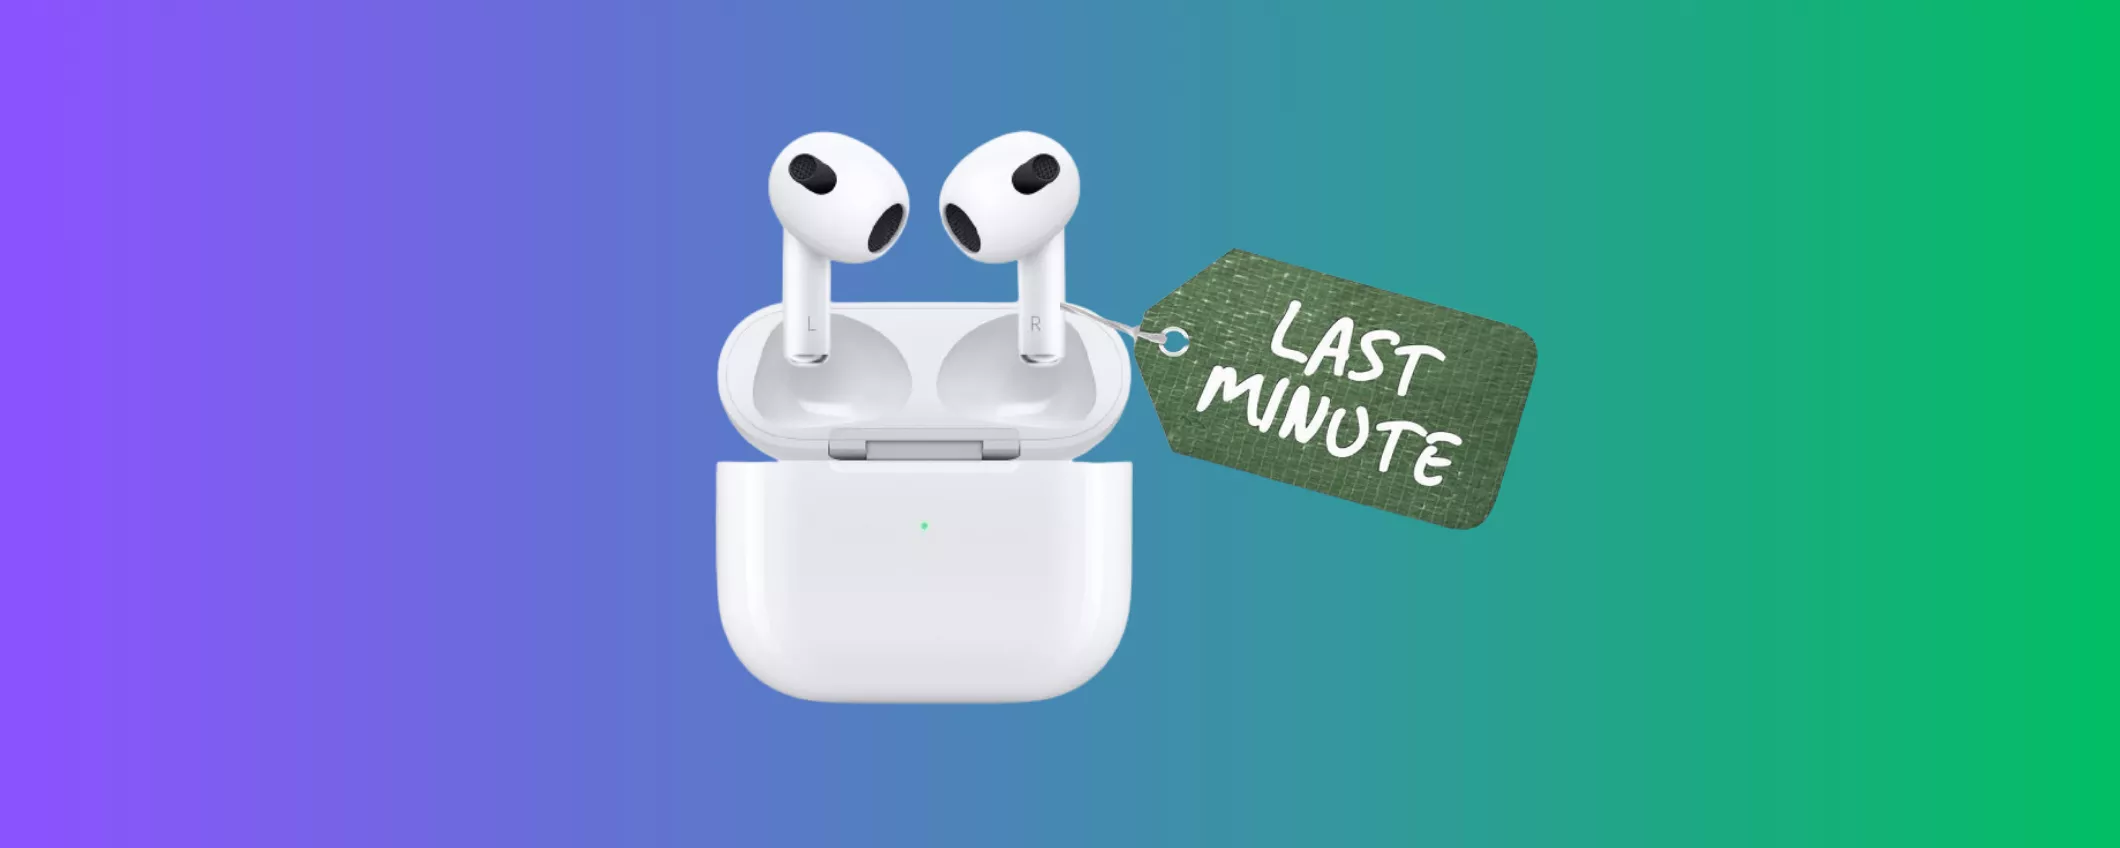 Apple AirPods 3 SCONTATISSIMI: applice il CODICE PROMO su eBay